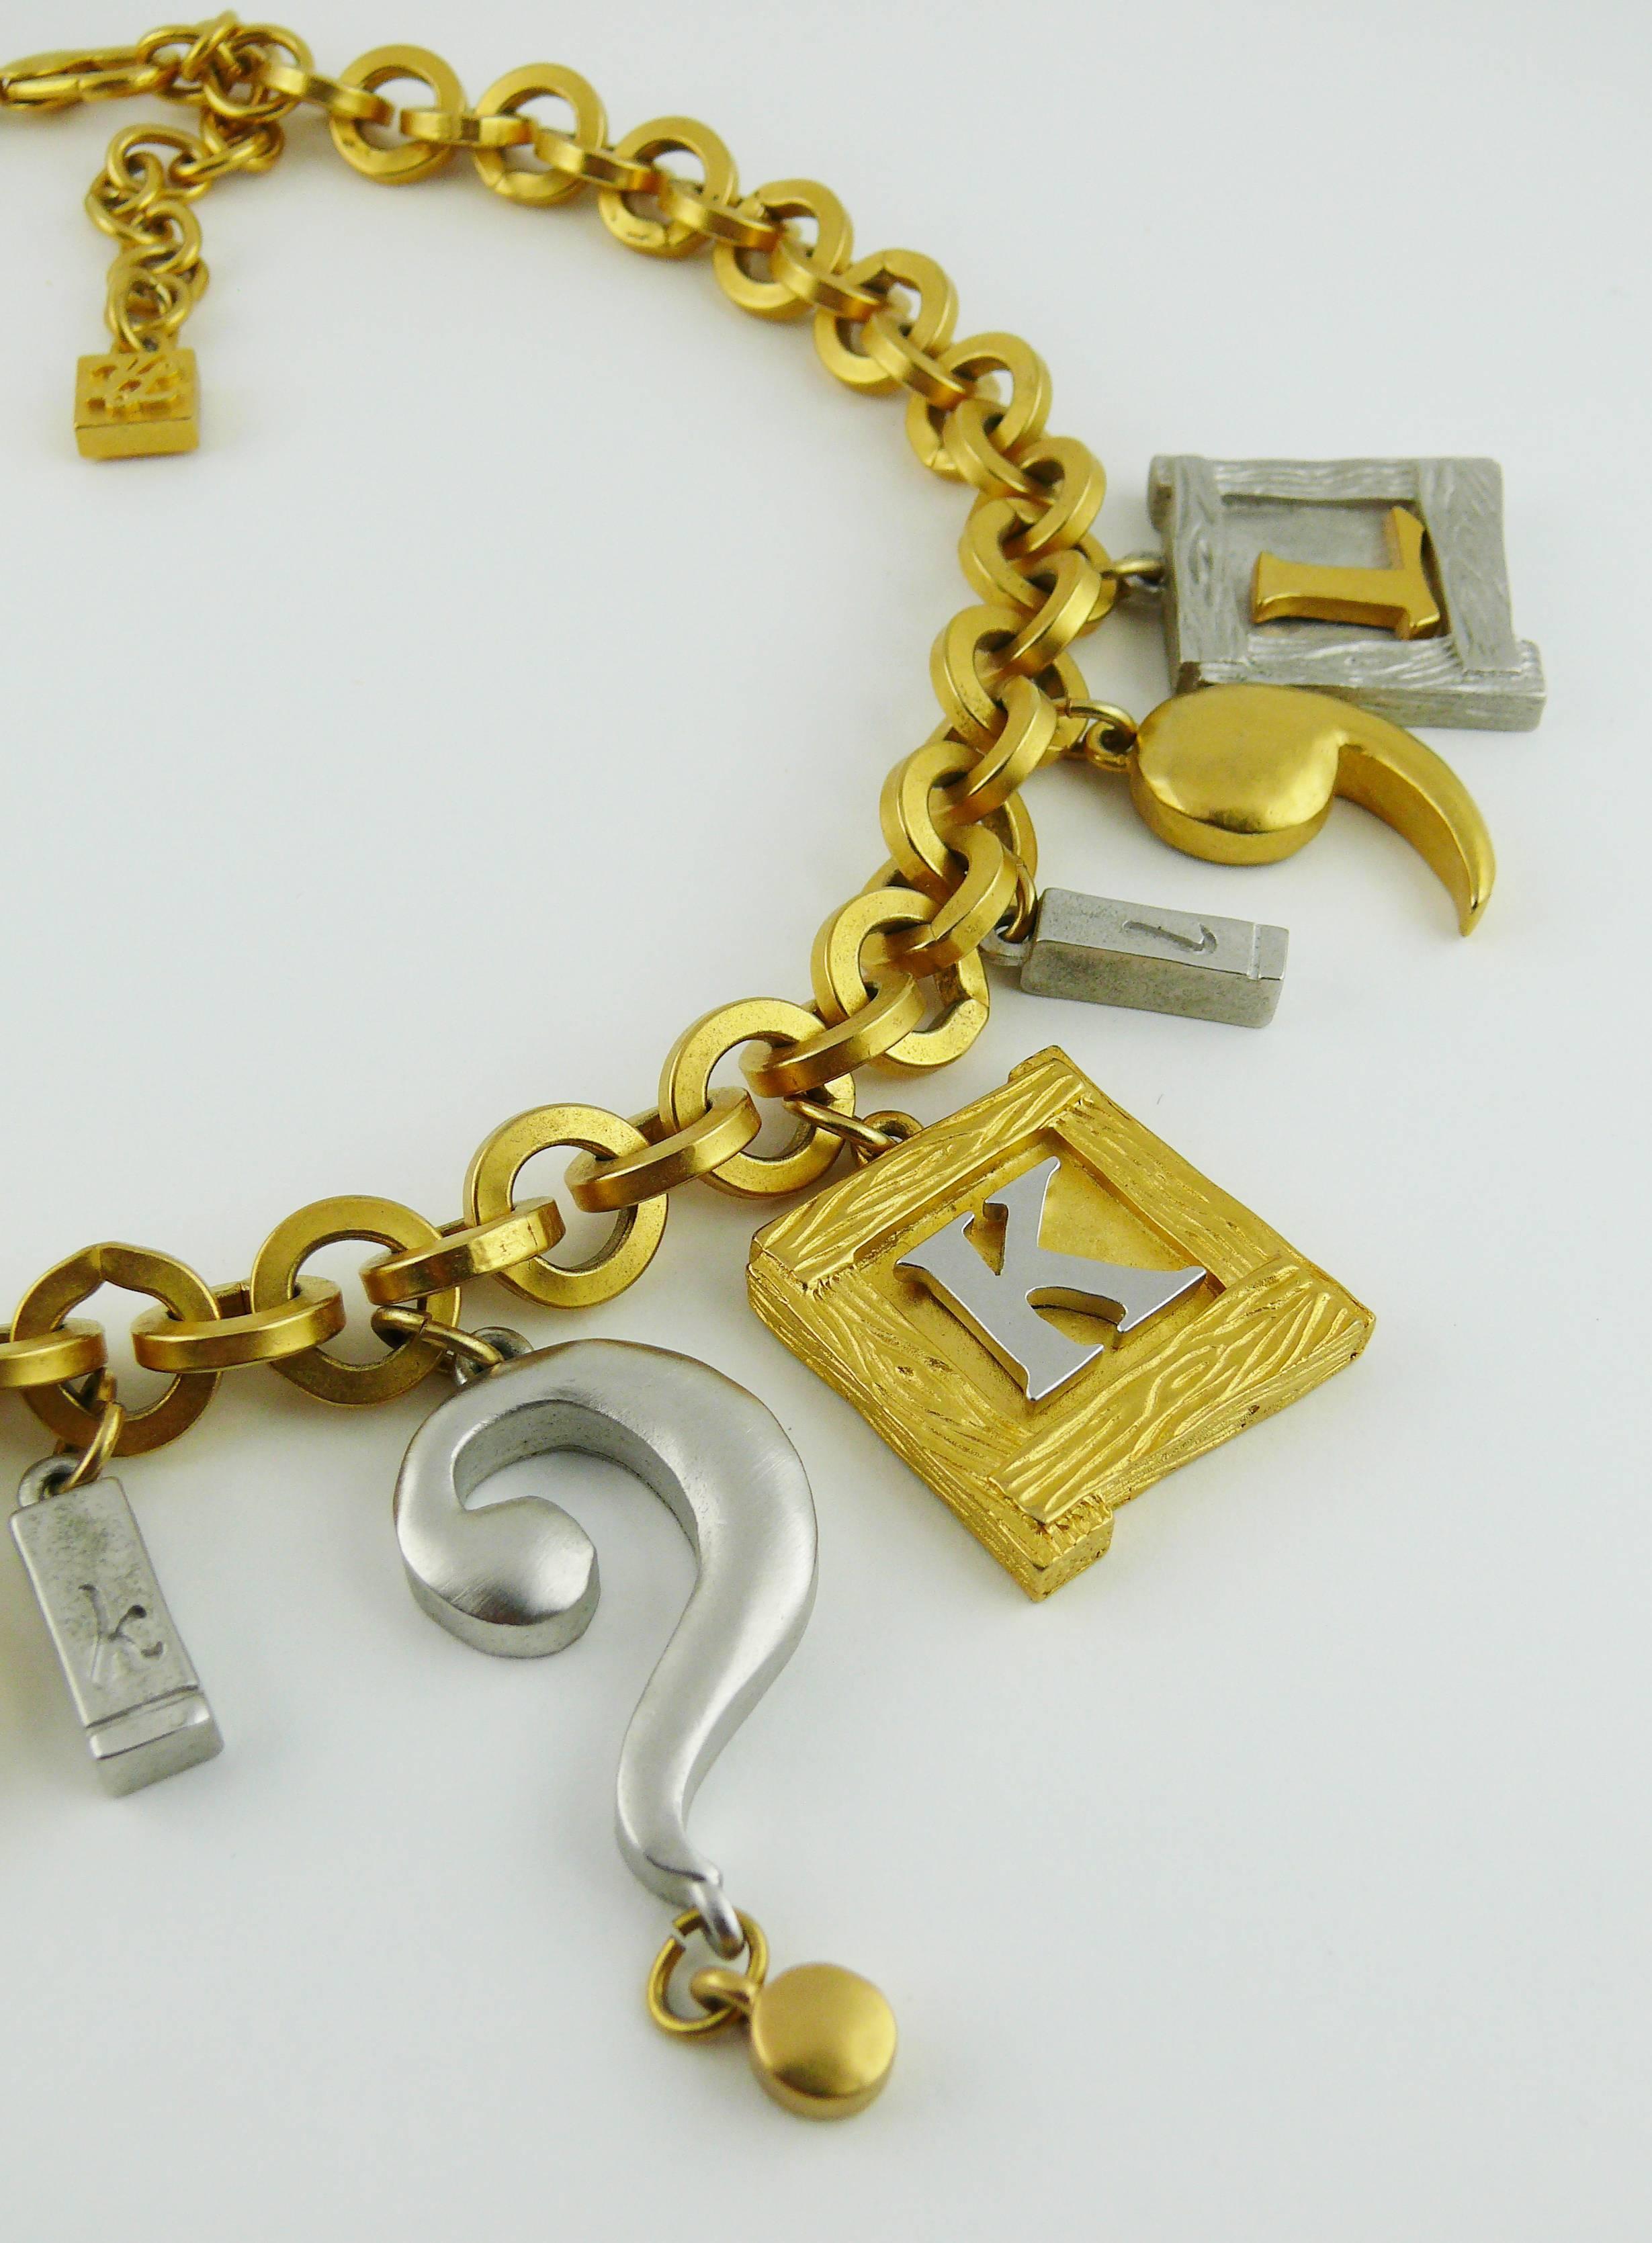 karl lagerfeld vintage jewelry